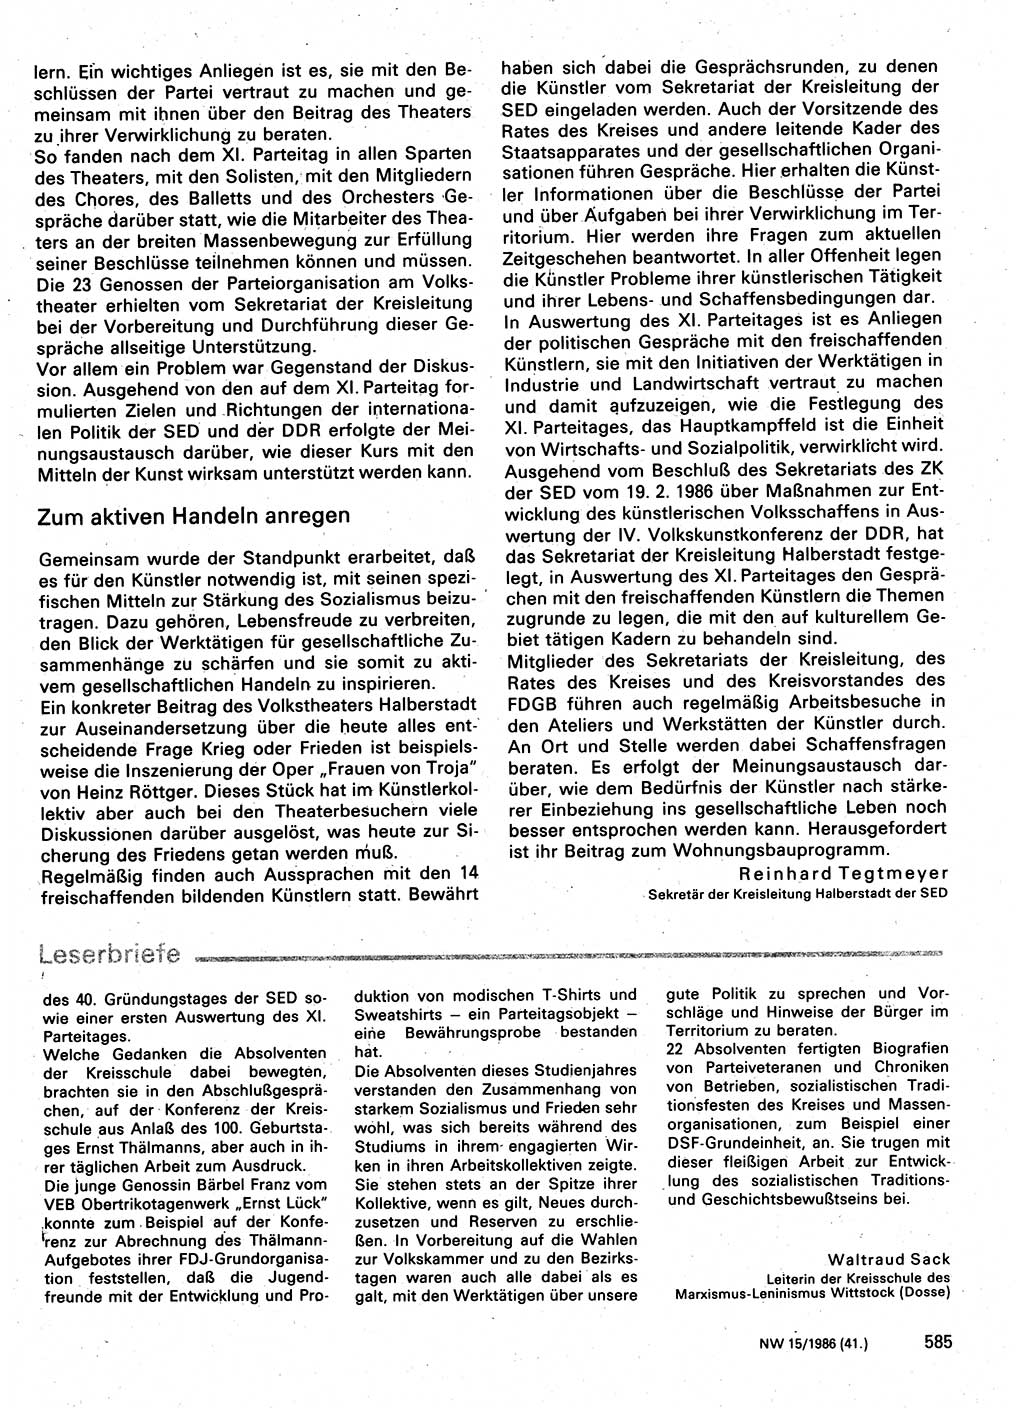 Neuer Weg (NW), Organ des Zentralkomitees (ZK) der SED (Sozialistische Einheitspartei Deutschlands) für Fragen des Parteilebens, 41. Jahrgang [Deutsche Demokratische Republik (DDR)] 1986, Seite 585 (NW ZK SED DDR 1986, S. 585)